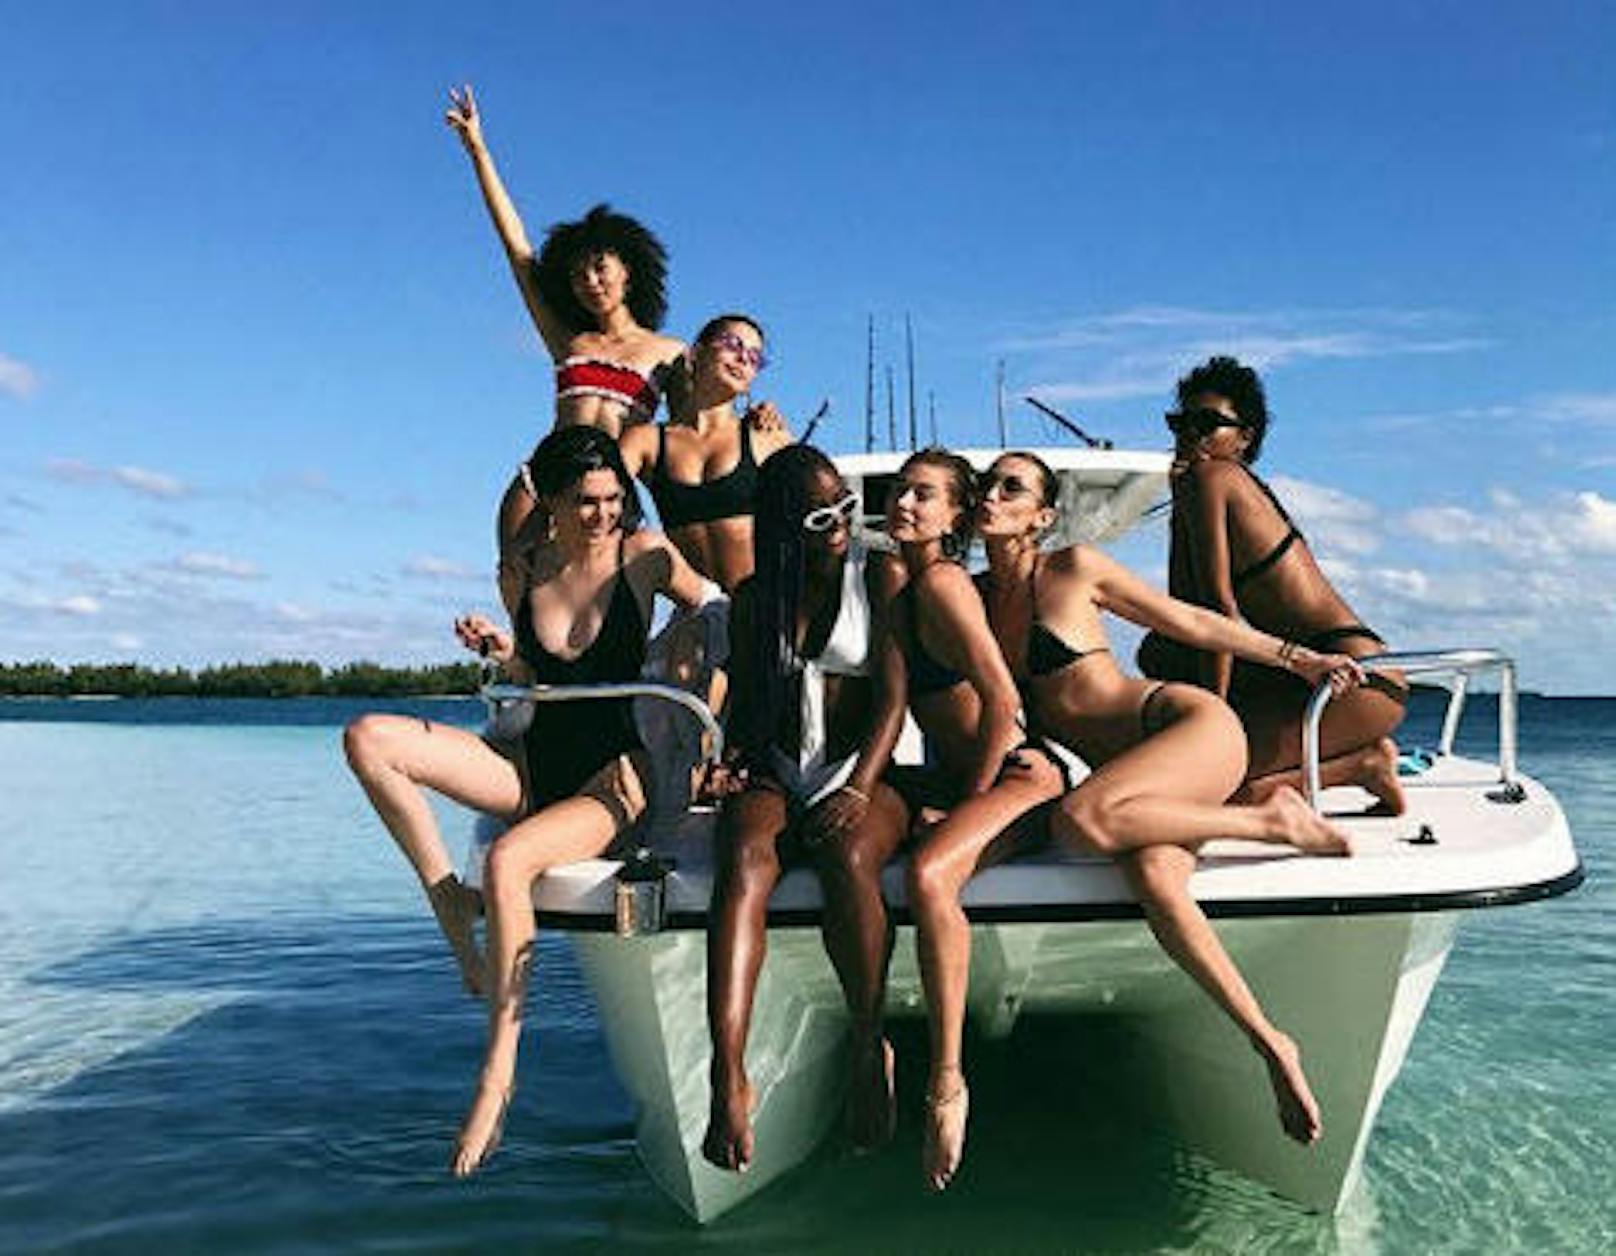 28.11.2017: Viele Models, ein Boot, tolle Stimmung - Kendall Jenner (vorne links) feiert mit Isabella Peschardt, Camila Morrone, Justine Skye, Hailey Baldwin, Renell Medrano und Bella Hadid auf den Bahamas. 